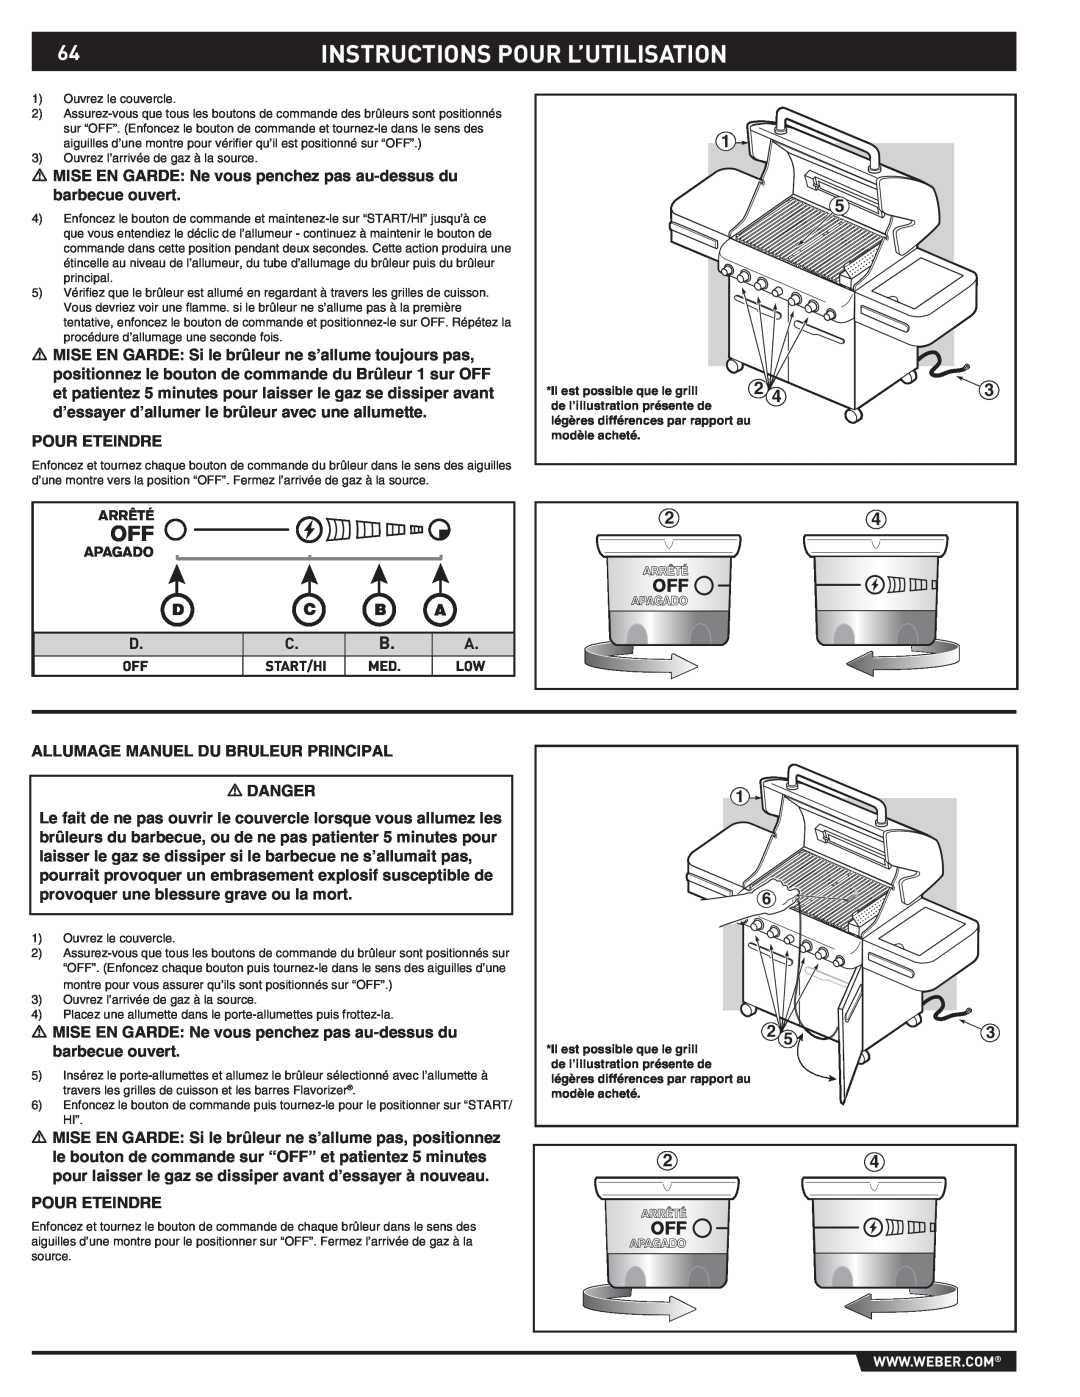 Weber S-470TM manual Instructions Pour L’Utilisation, D C B A, Il est possible que le grill, de l’illustration présente de 